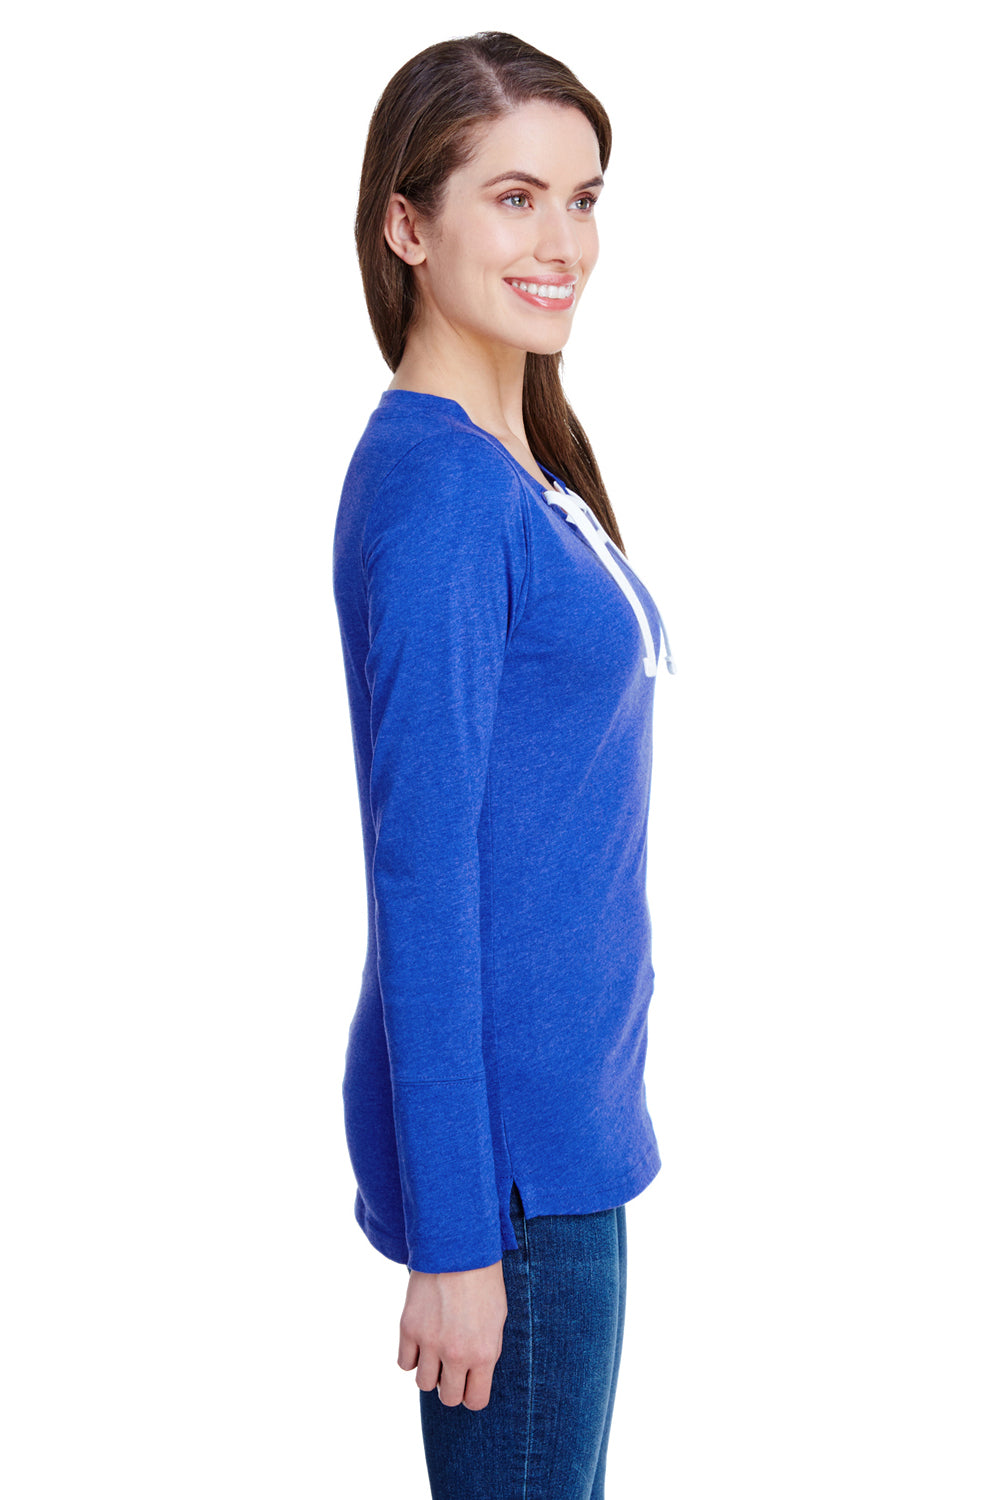 LAT LA3538 Womens Fine Jersey Lace Up Long Sleeve V-Neck T-Shirt Royal Blue Side